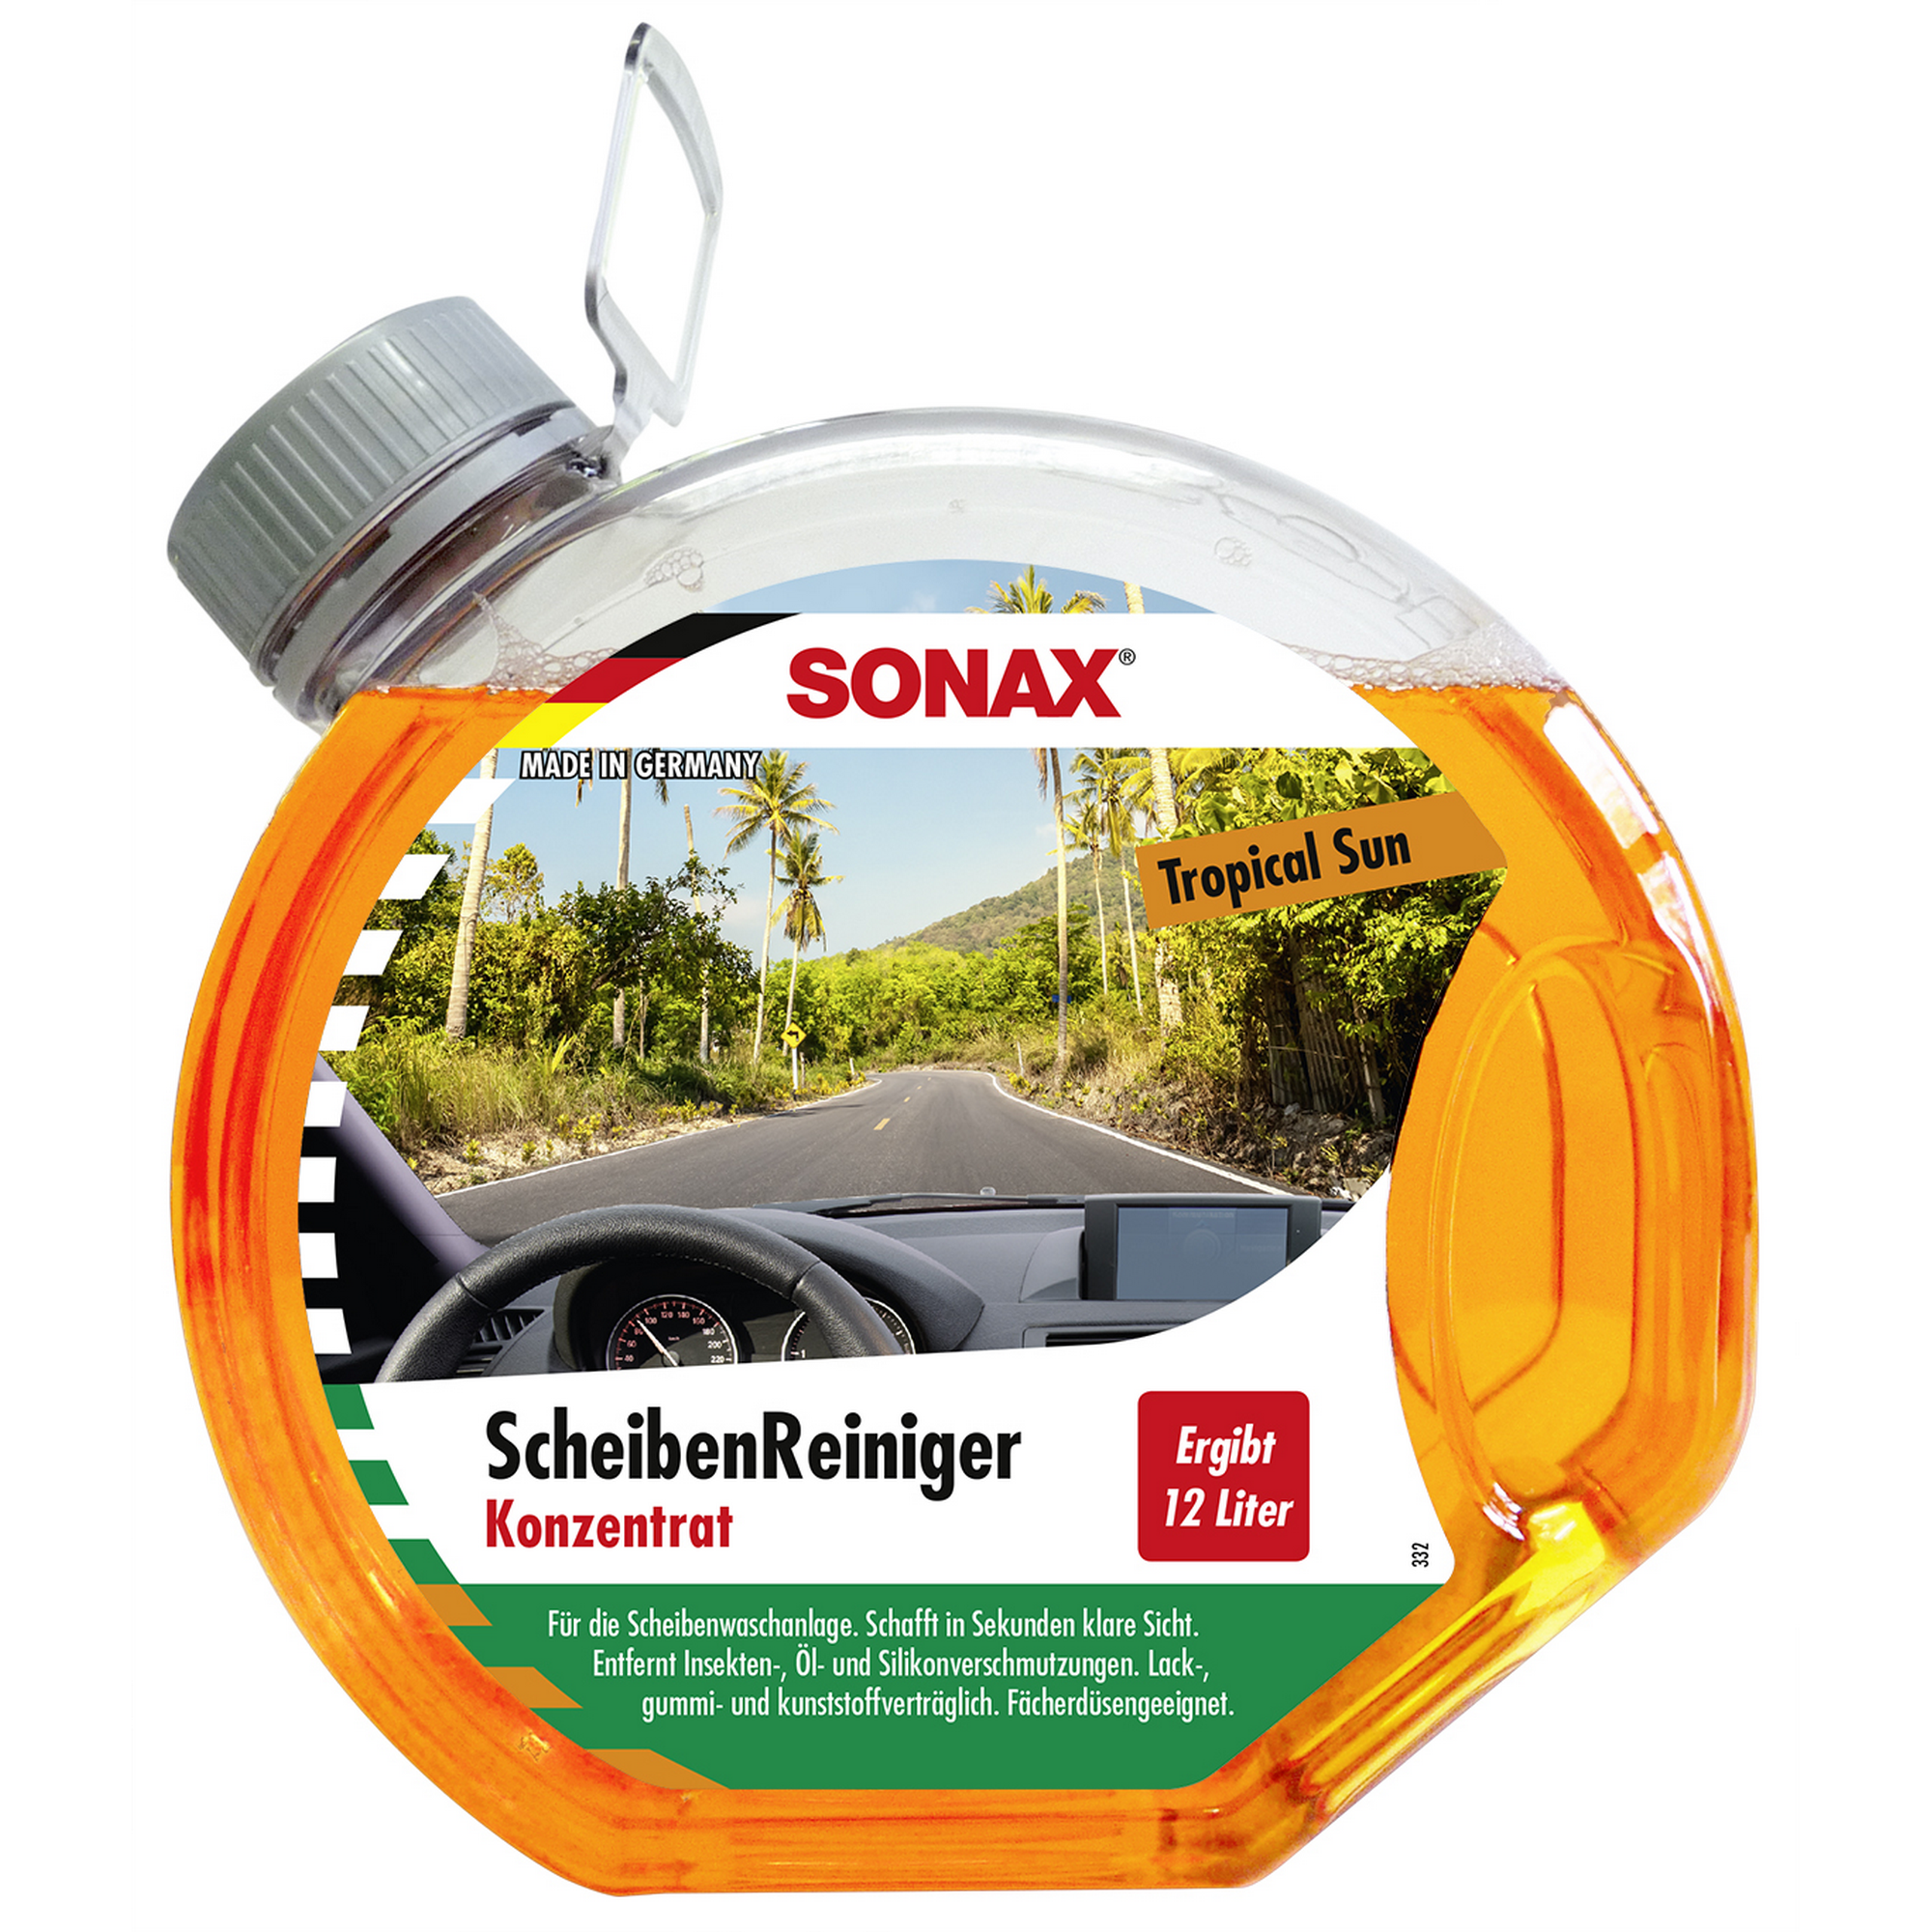 Scheibenreiniger-Konzentrat Tropical Sun 3000 ml + product picture